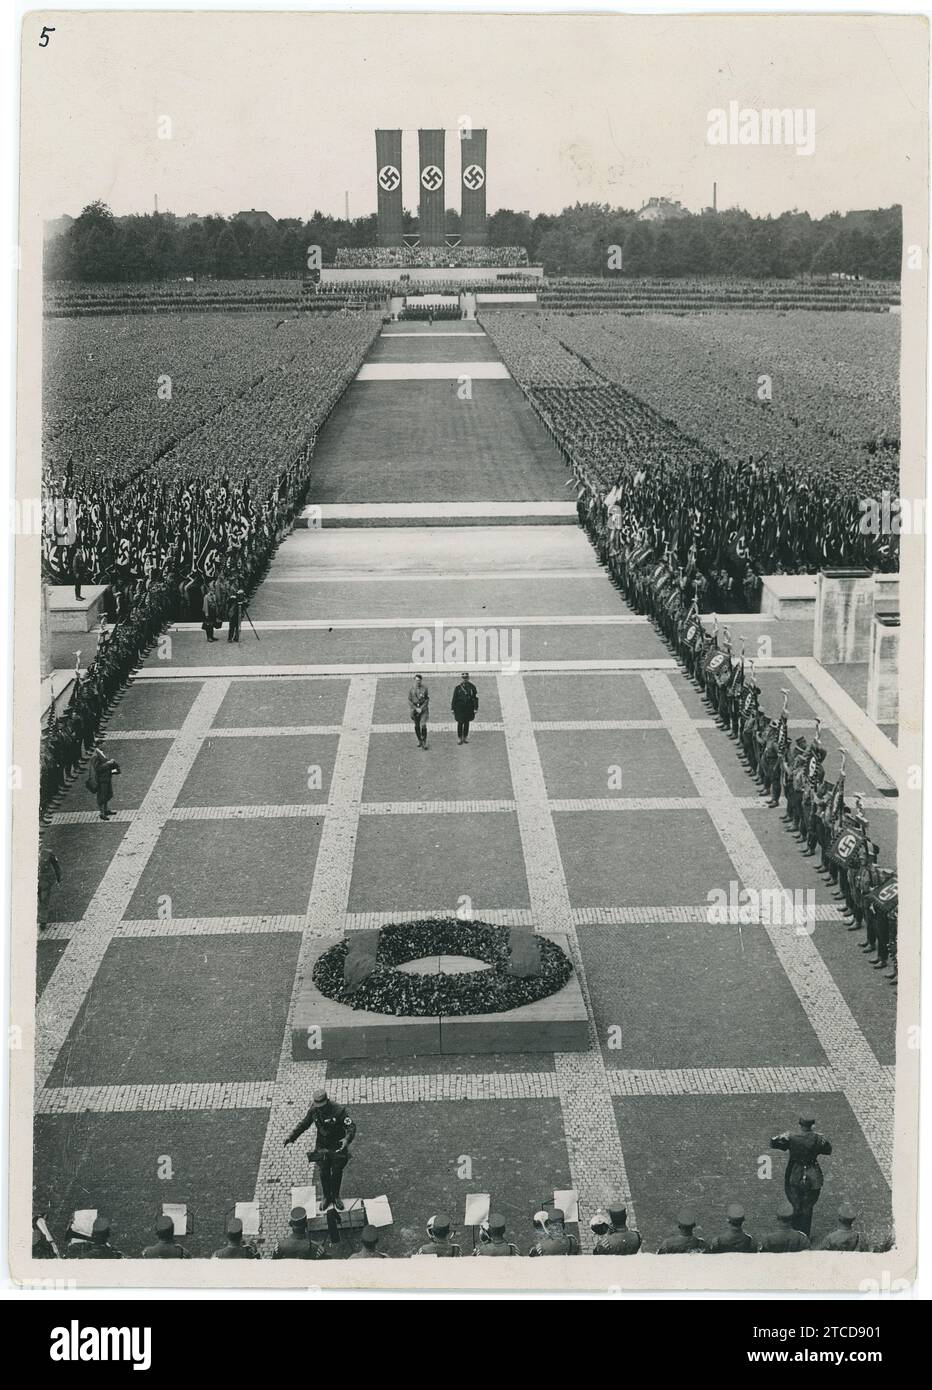 Nuremberg (Allemagne), 09/03/1933. Congrès de Nuremberg de 1933. Adolf Hitler et Ernst Röhm lors de la commémoration des morts. Crédit : Album / Archivo ABC / Keystone Banque D'Images